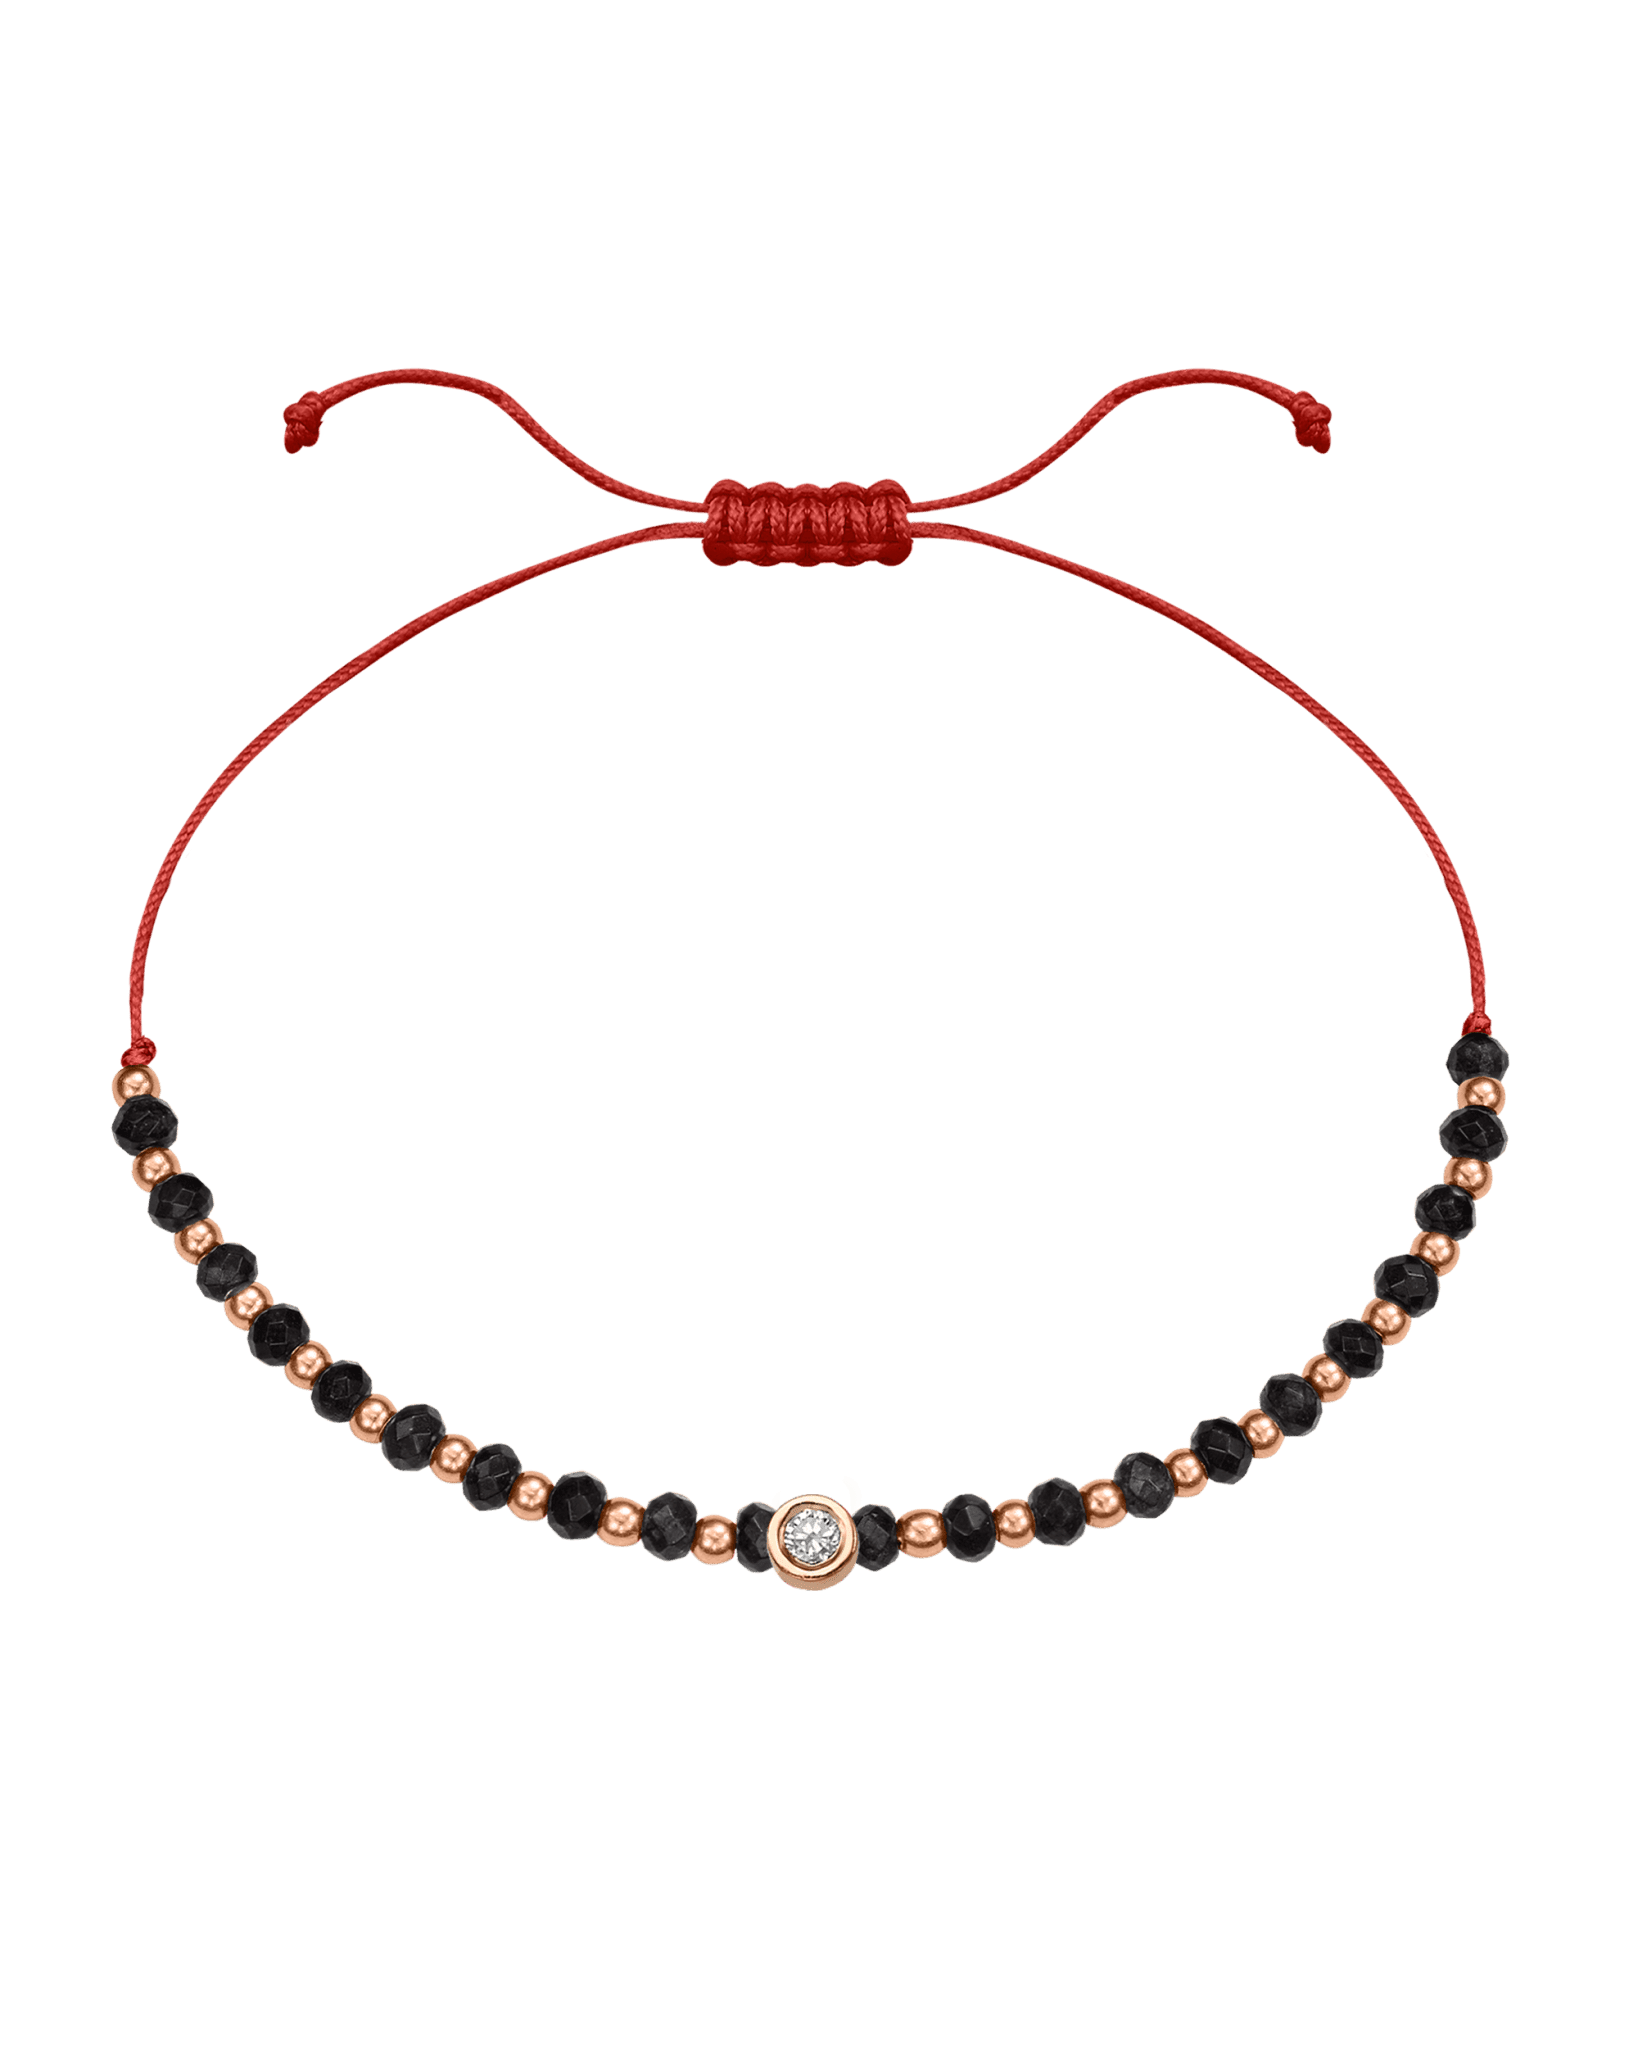 Black Onyx Gemstone String of Love Bracelet for Protection - 14K Rose Gold Bracelets 14K Solid Gold Red Medium: 0.04ct 